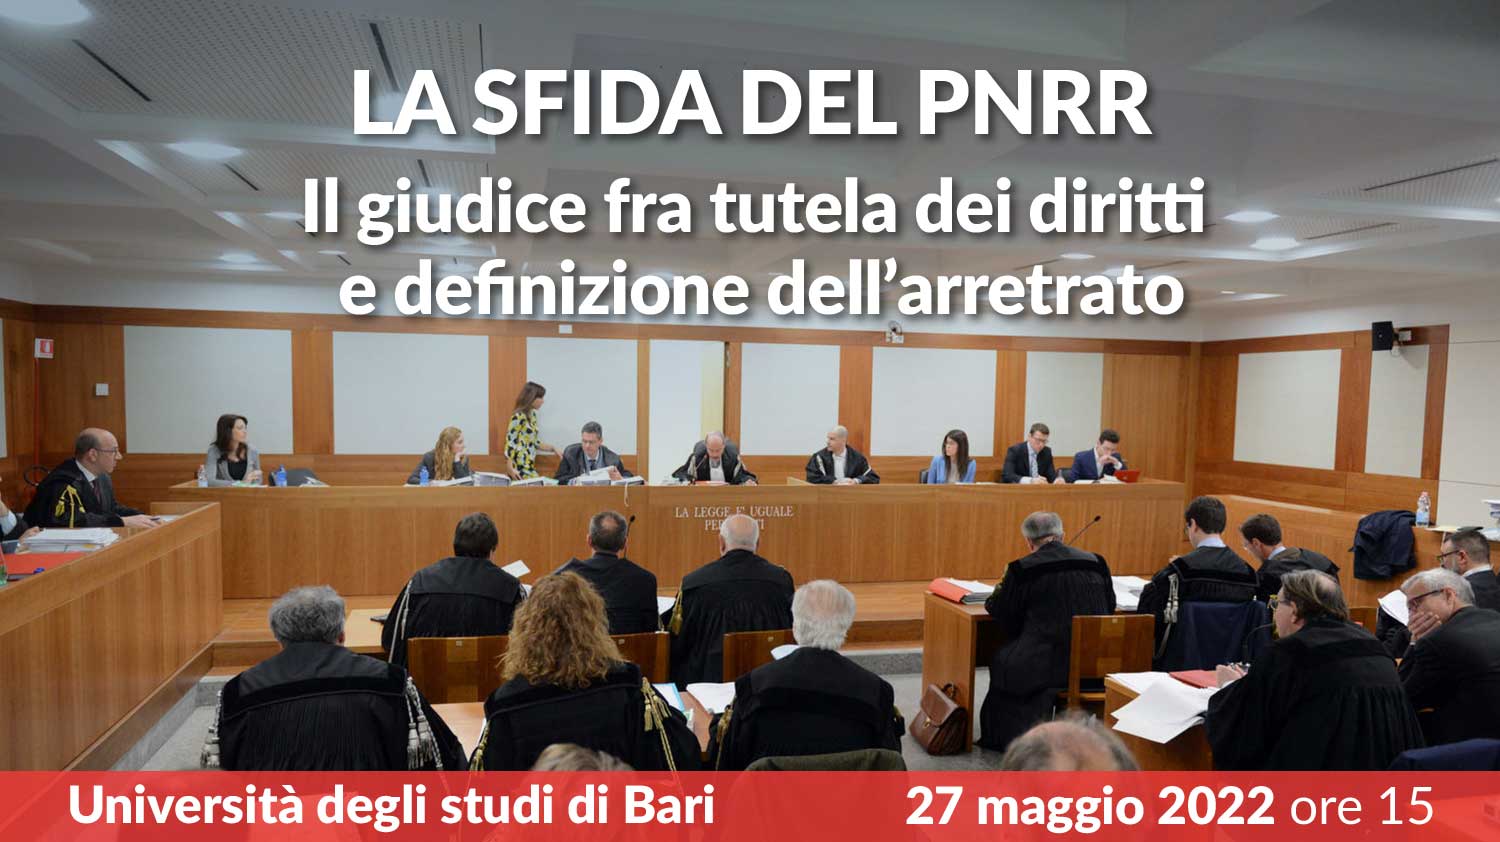 La sfida del PNRR: il giudice fra tutela dei diritti e definizione dell’arretrato